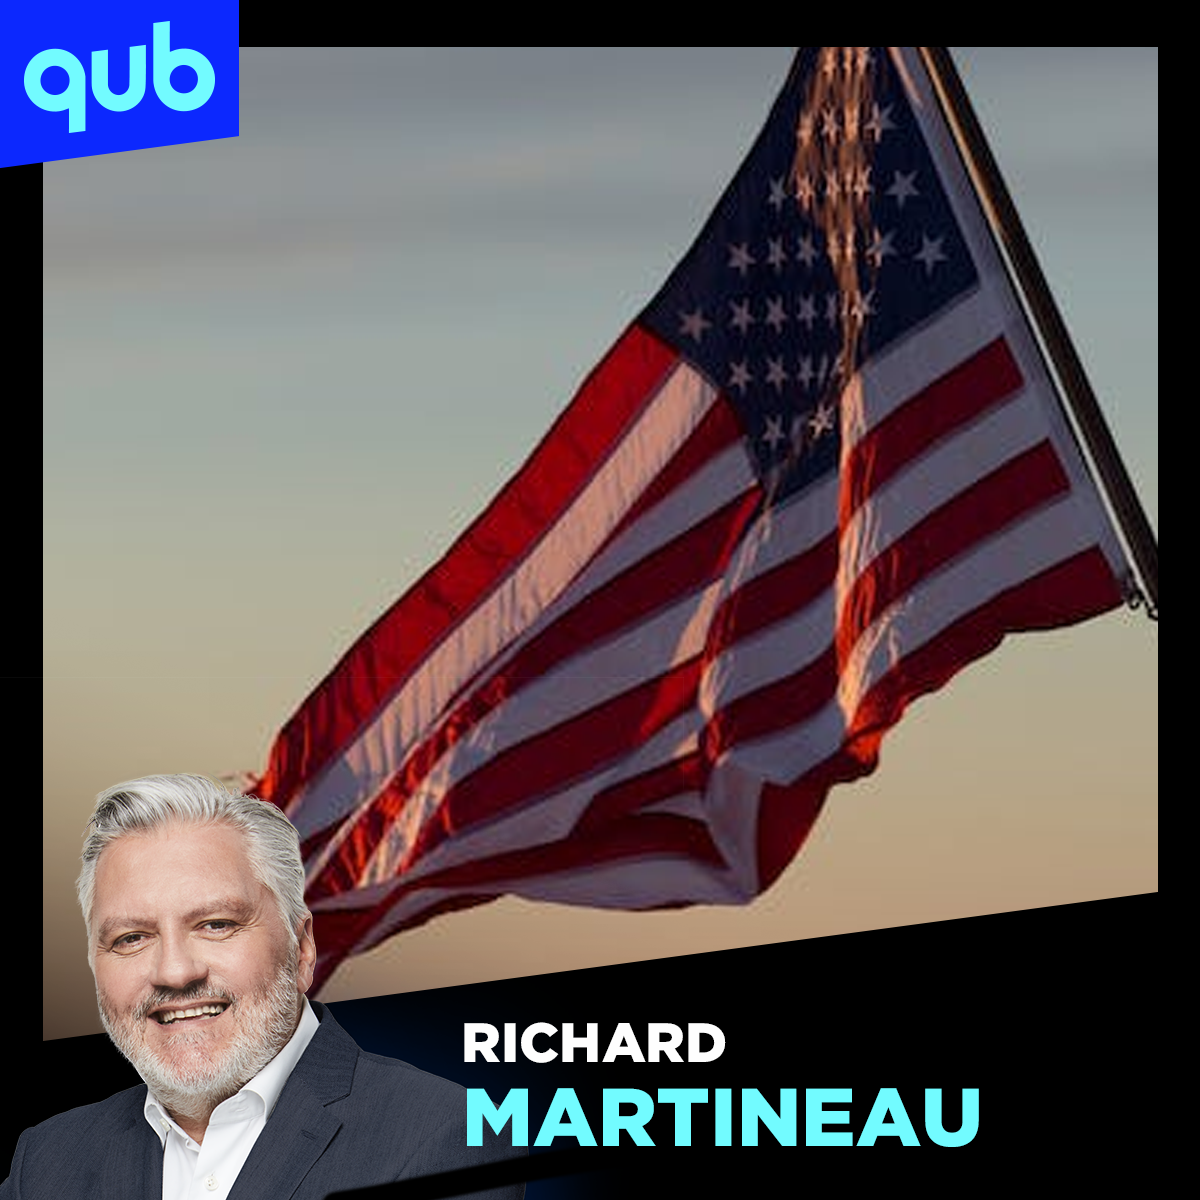 États-Unis : les démocrates vont au bâton avec le mauvais candidat, pense Martineau